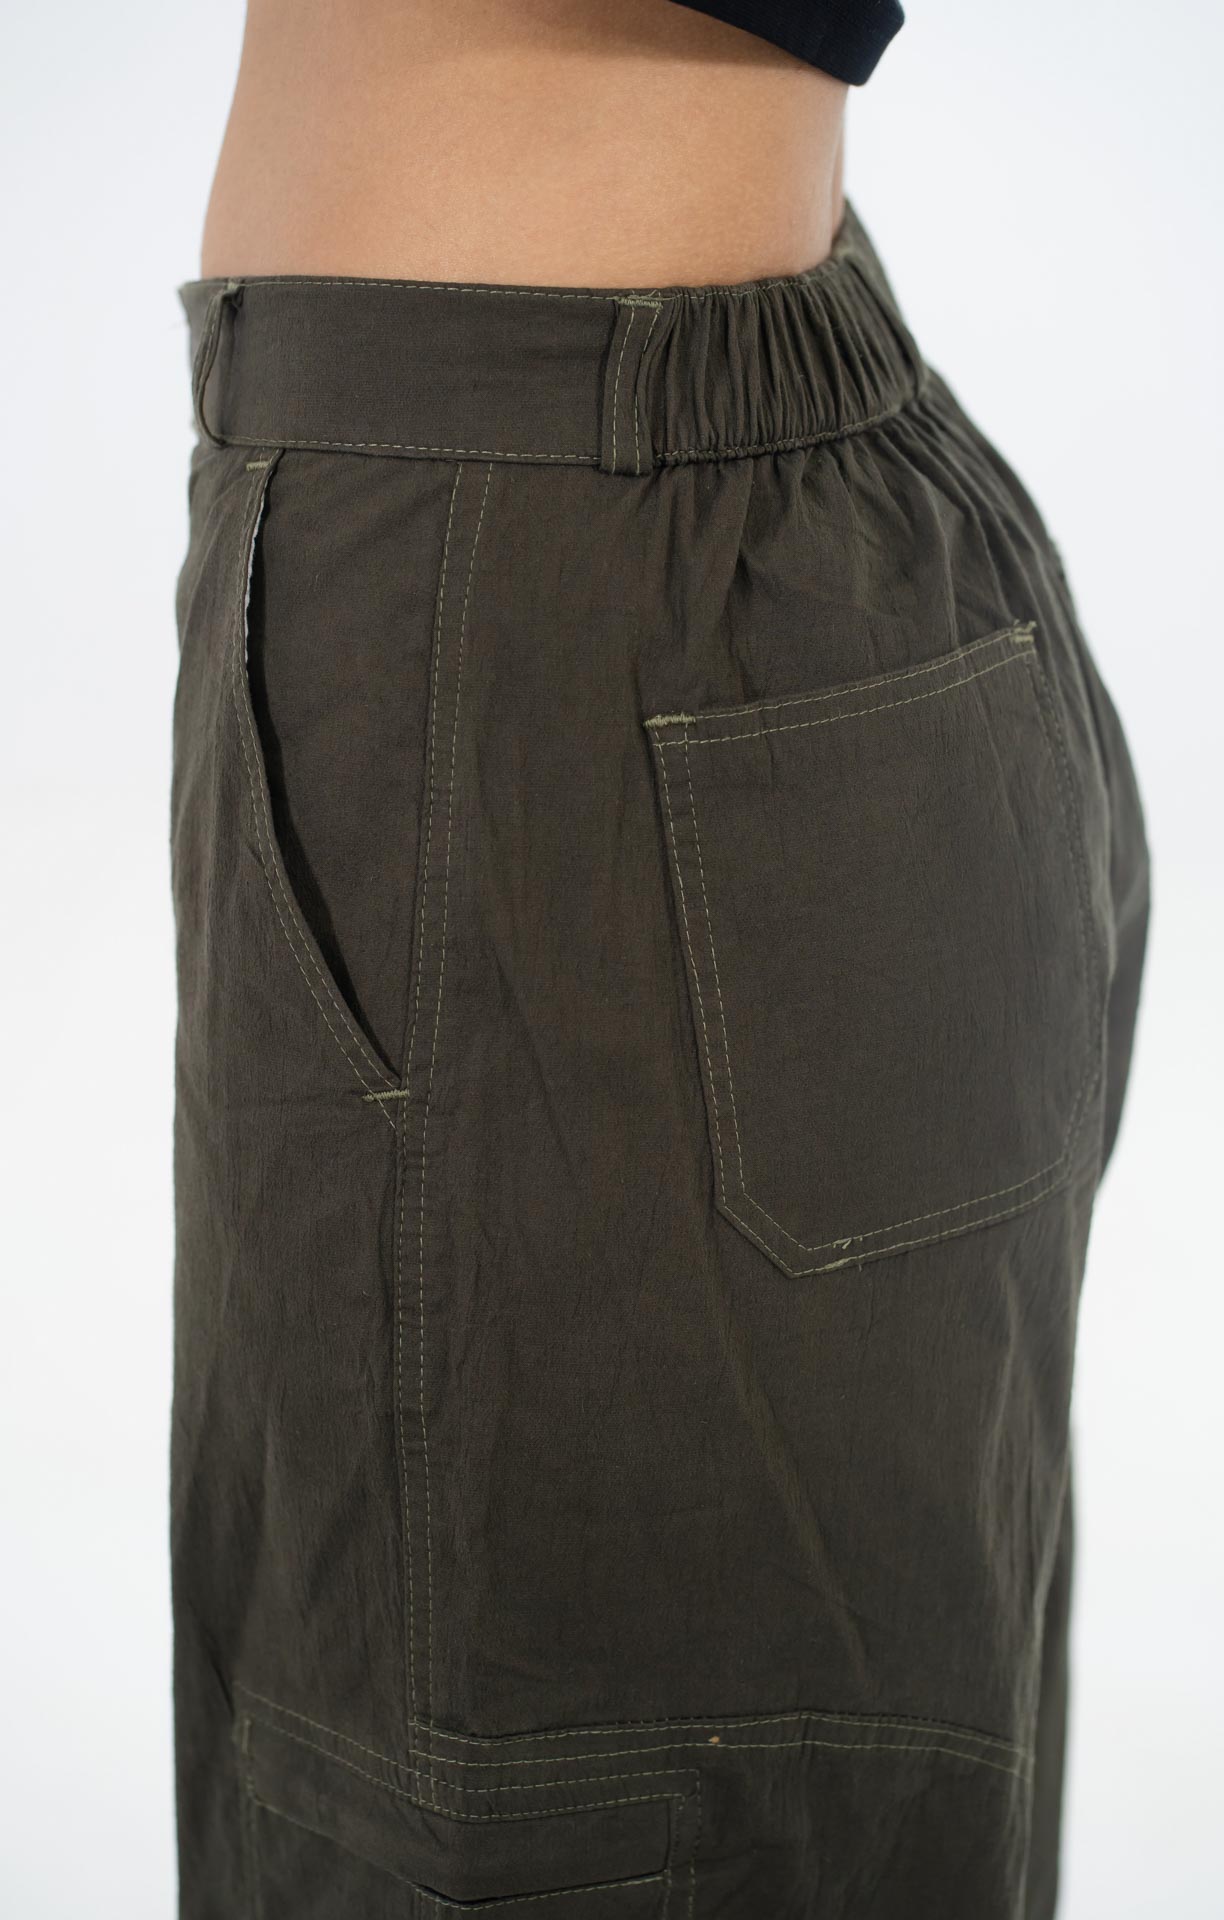 MODE Dark Olive Cargo Trouser